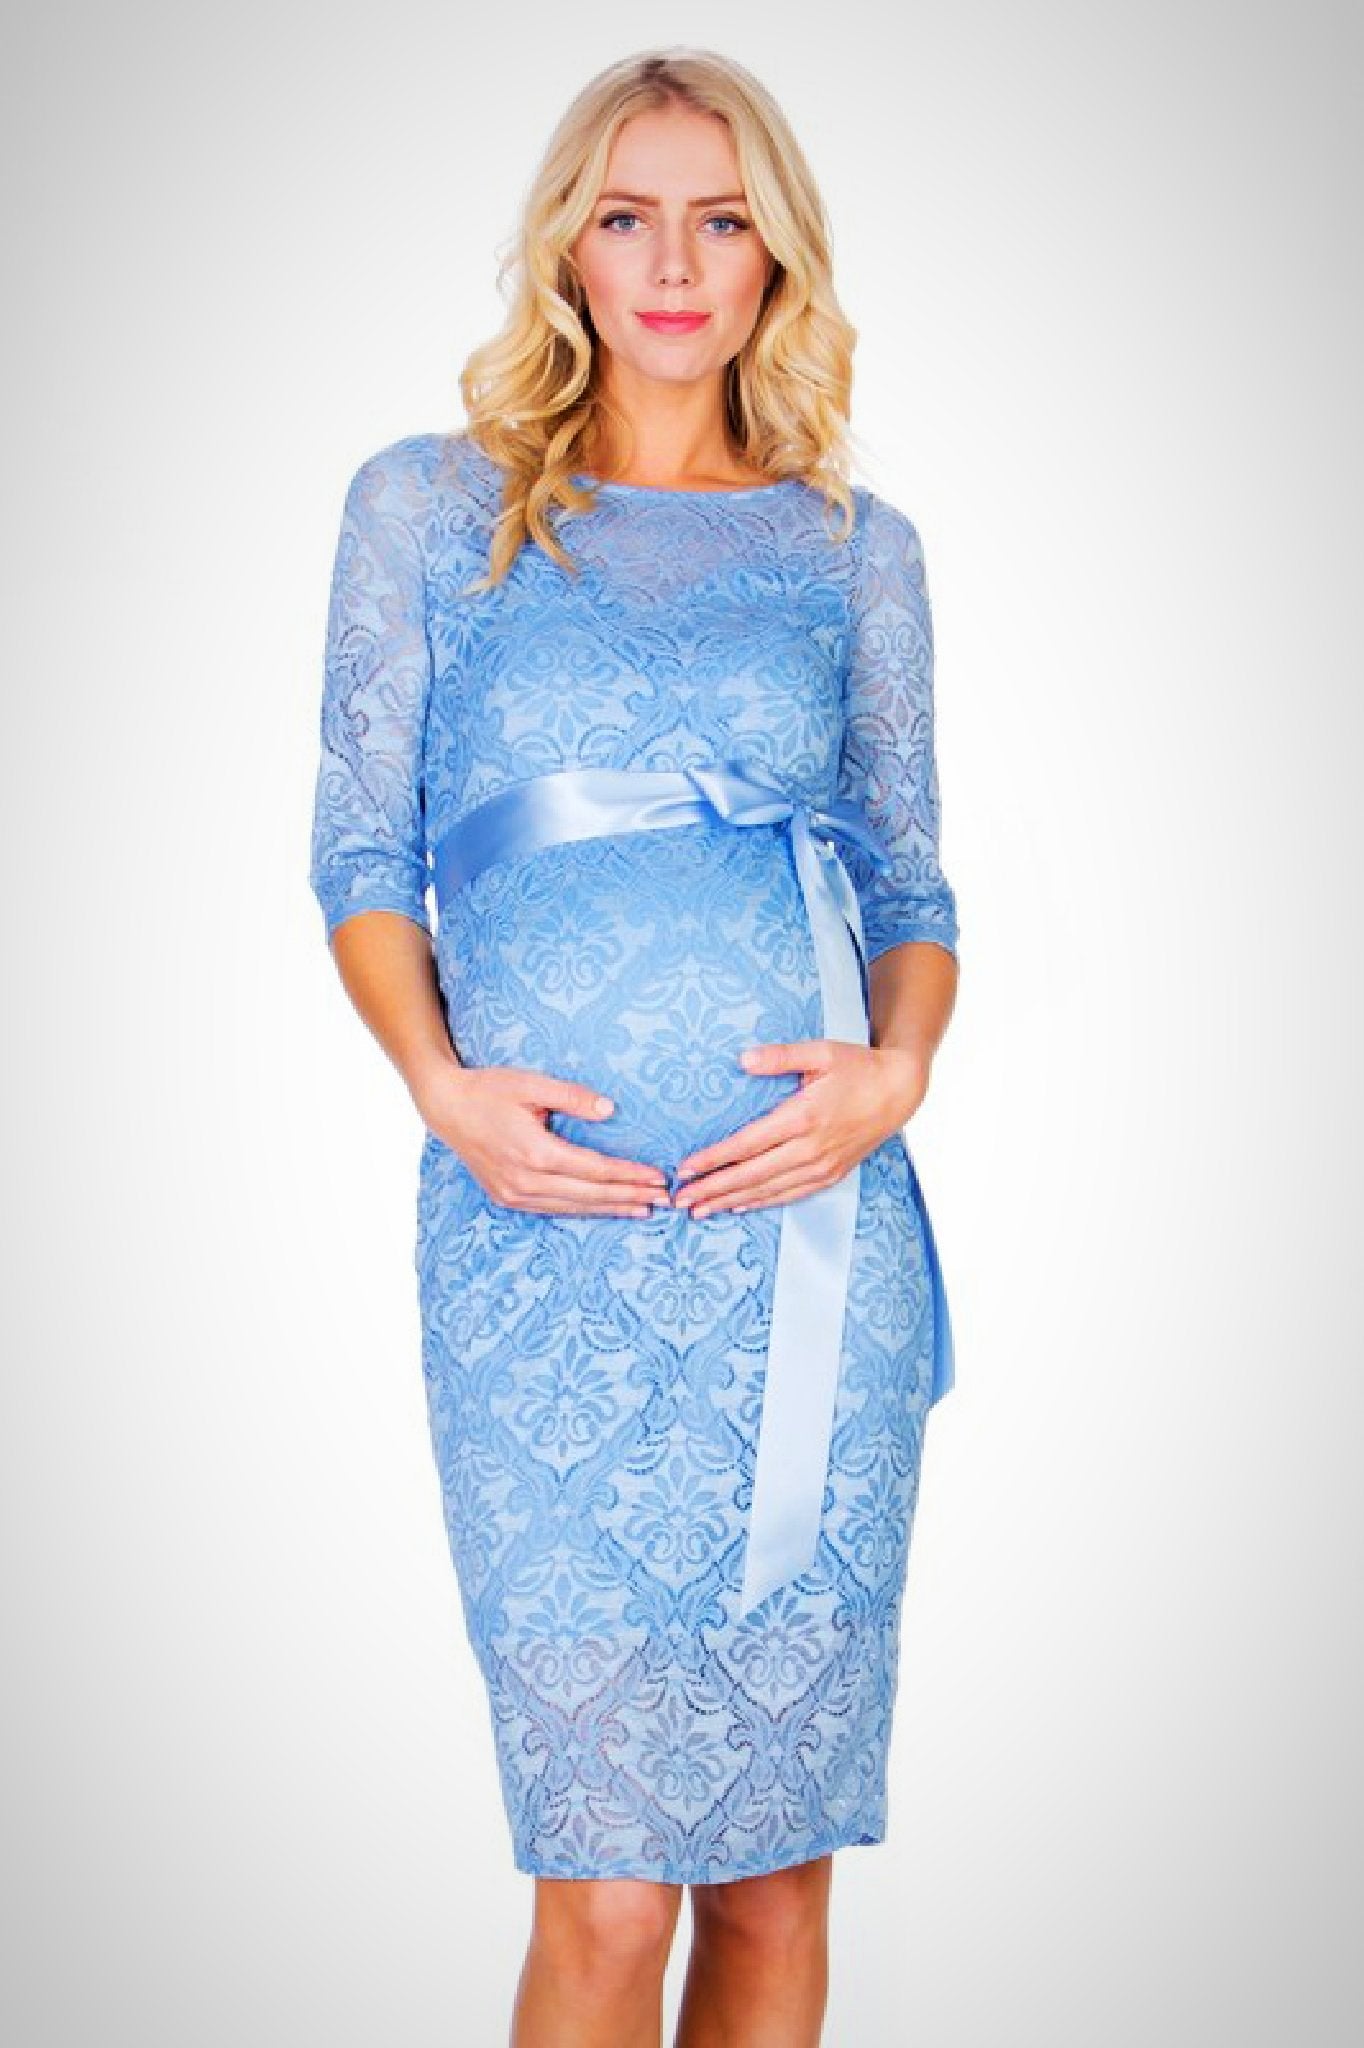 Blue Lace Maternity Dress - ON SALE